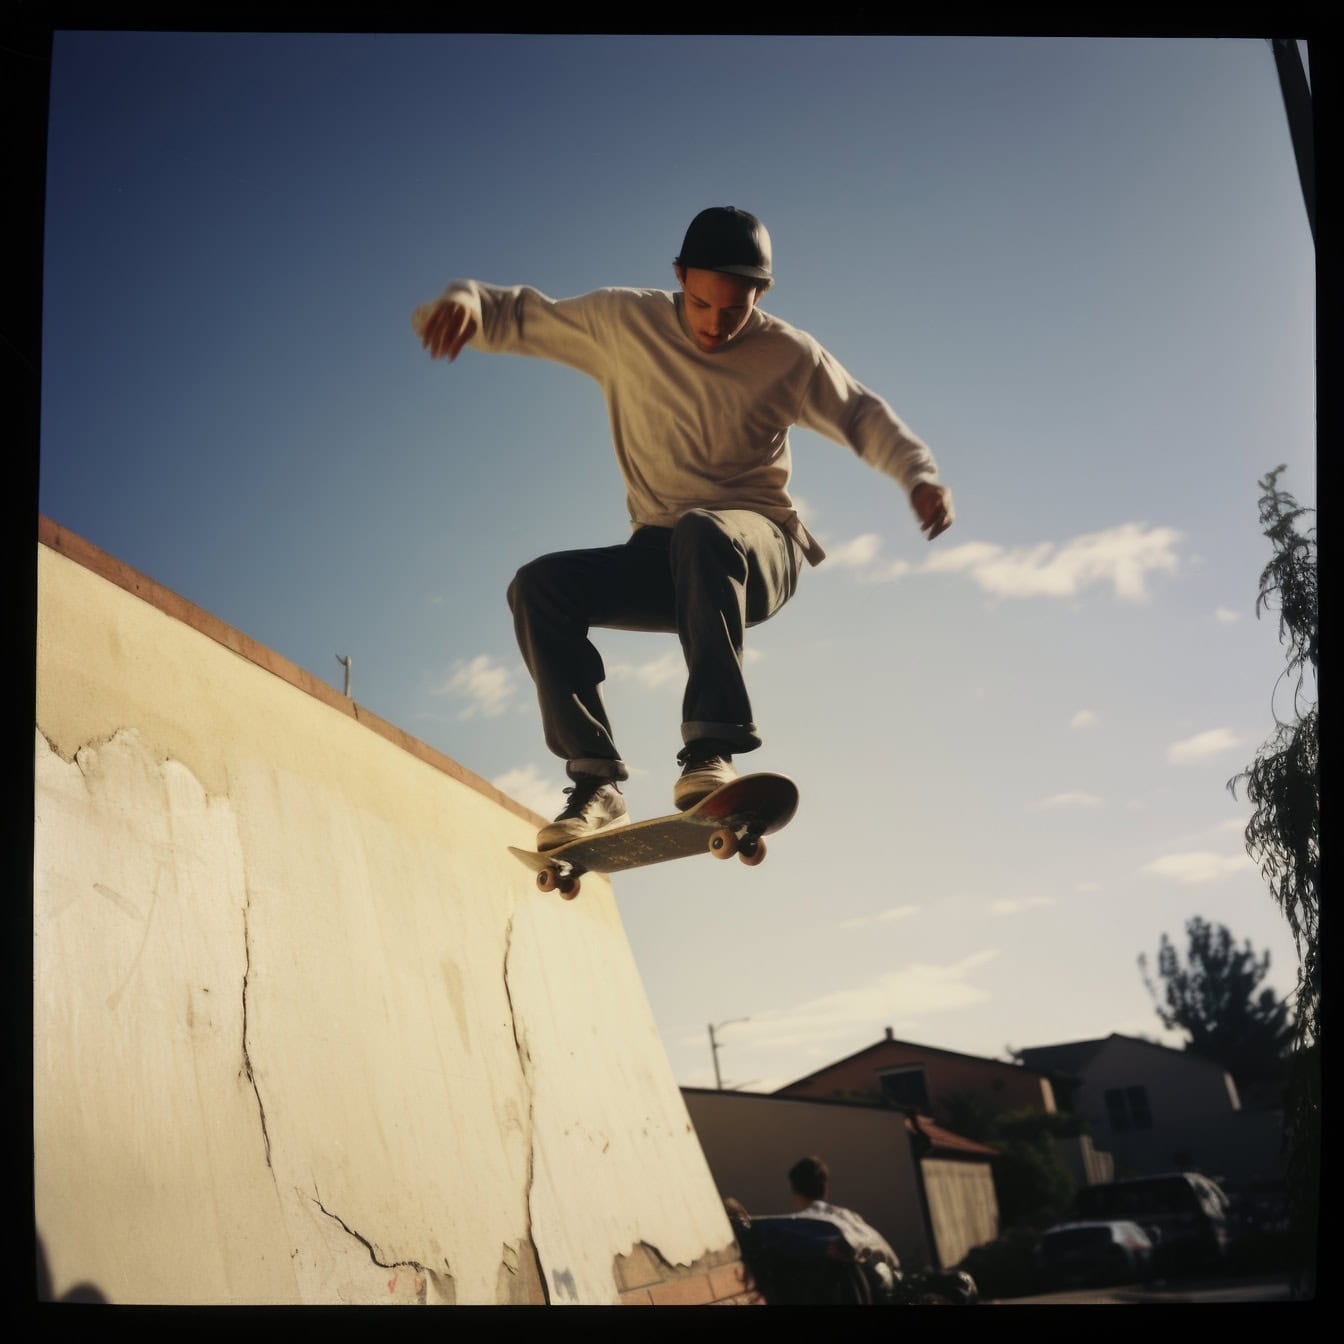 Oude polaroidfoto van een jonge mens die van een schans op een skateboard als een stuntman springt